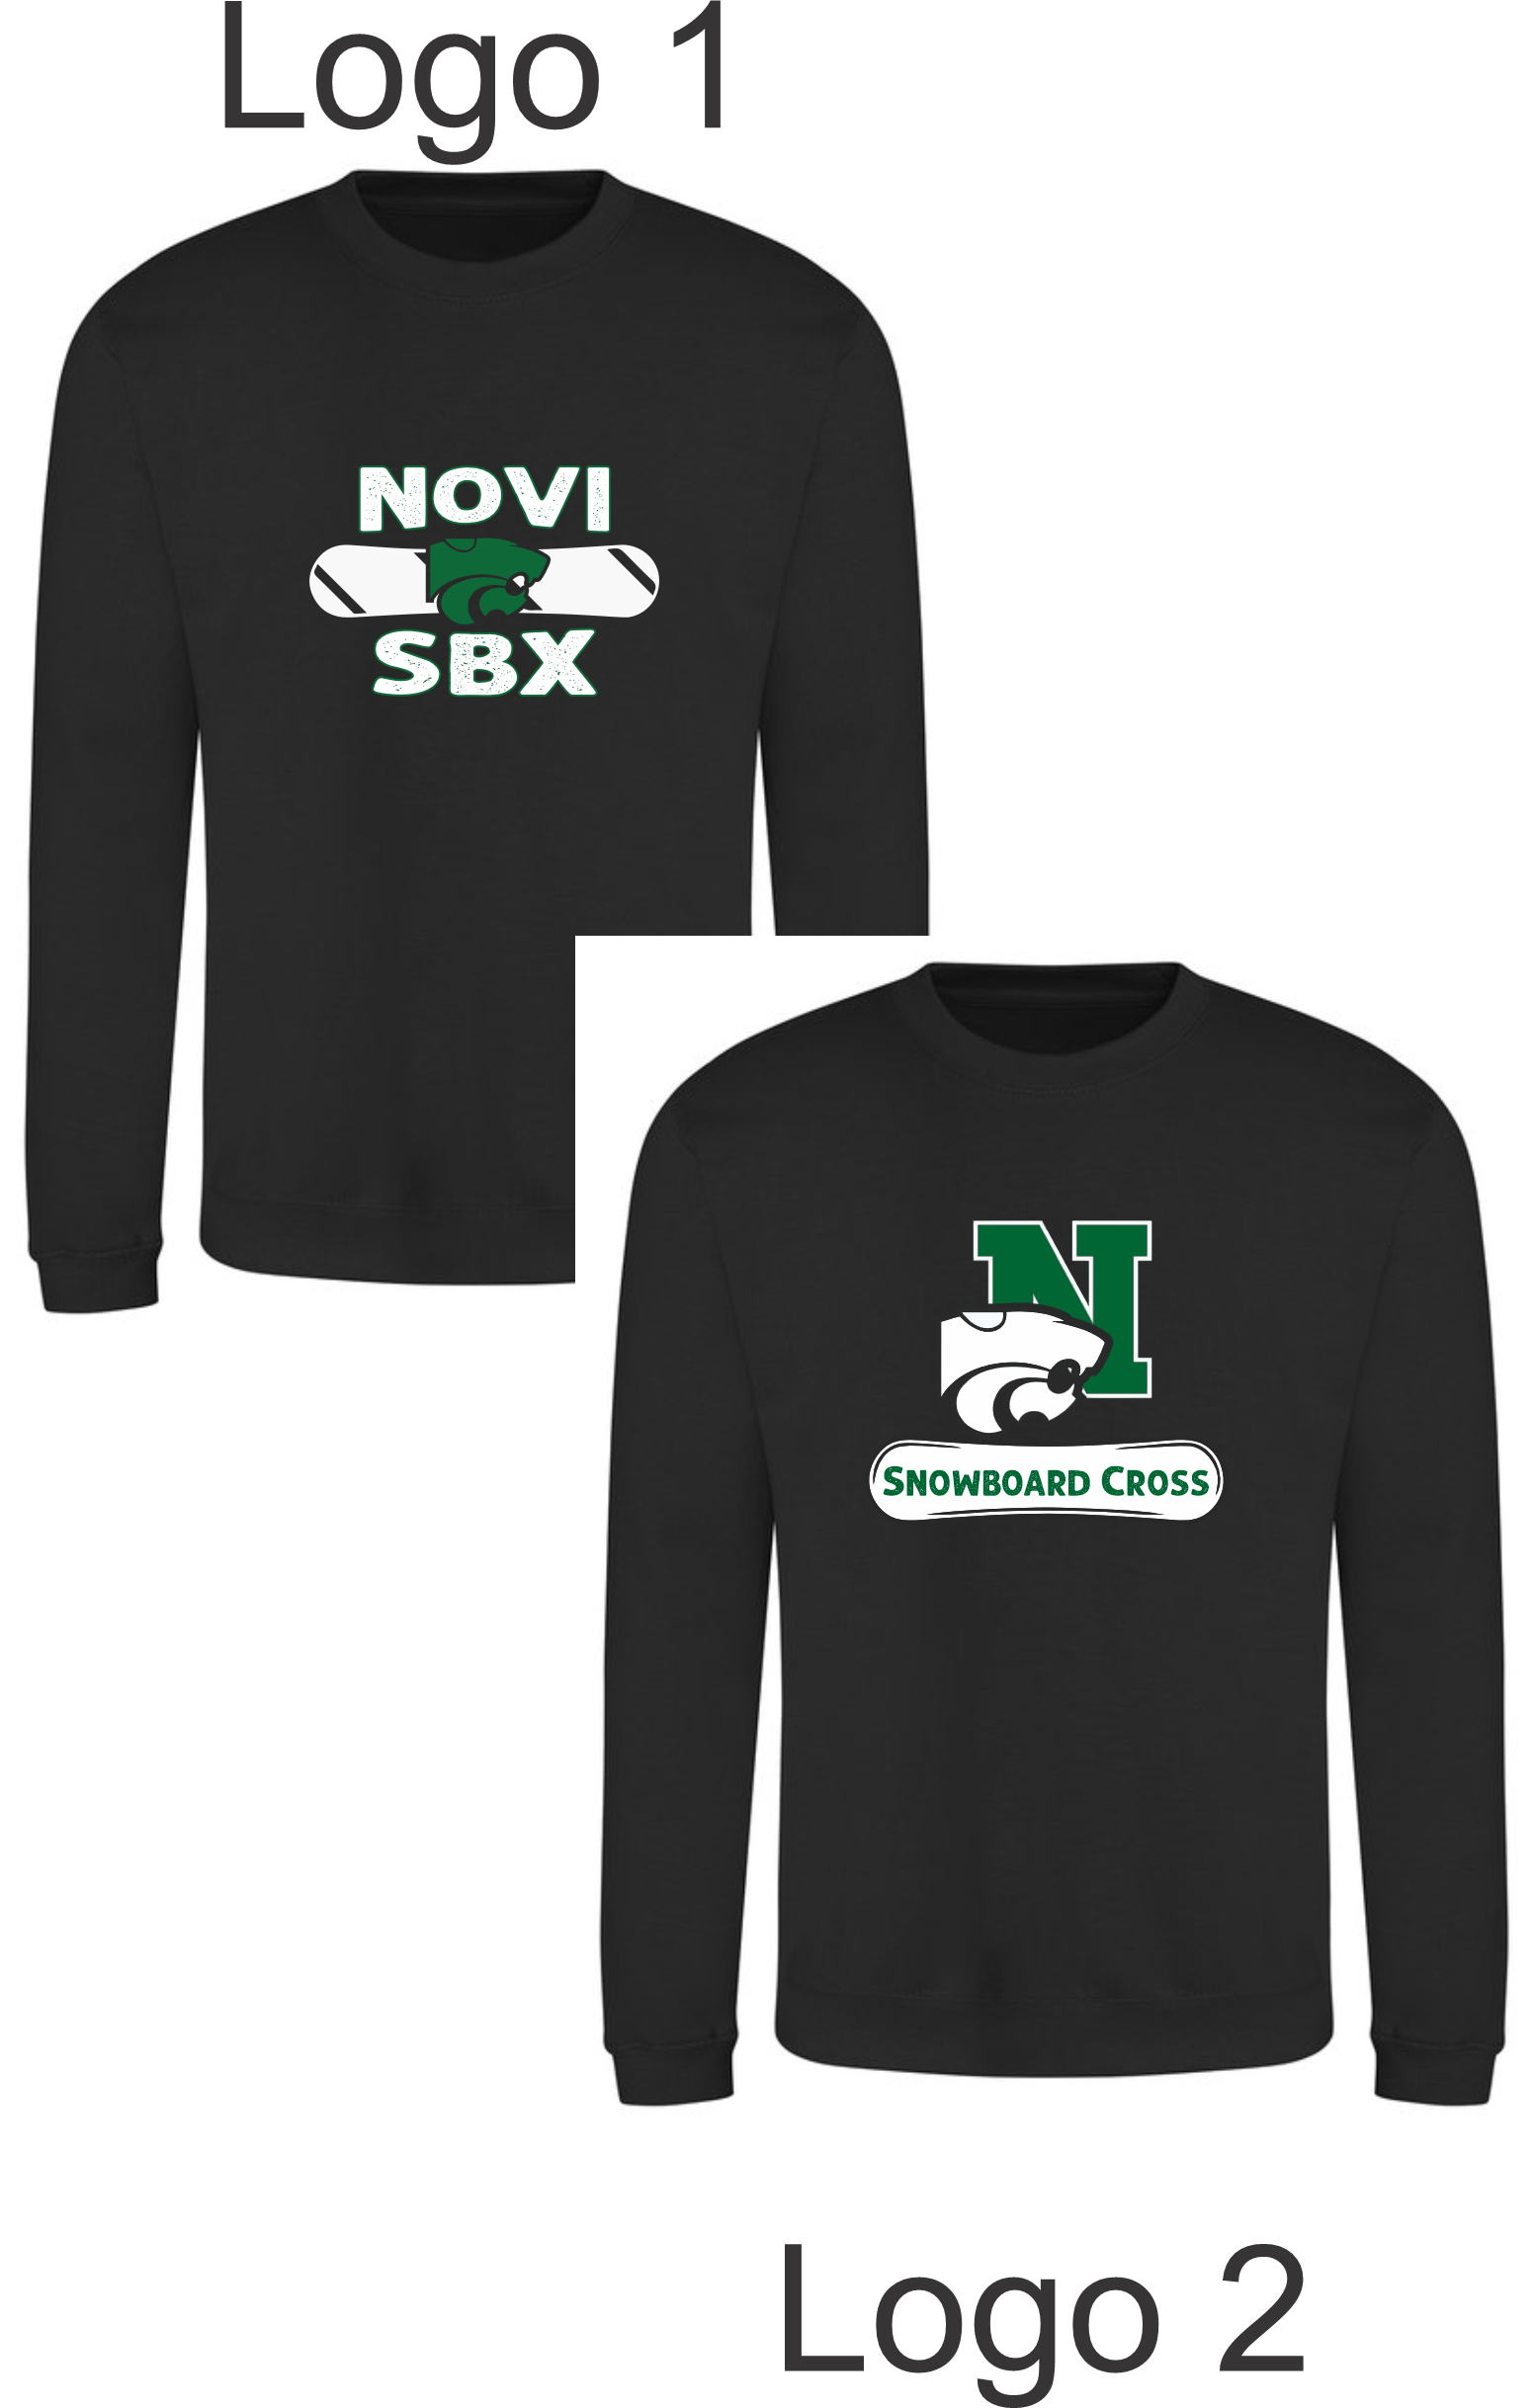 Novi SBX/Snowboard Cross Crew Neck Sweatshirt